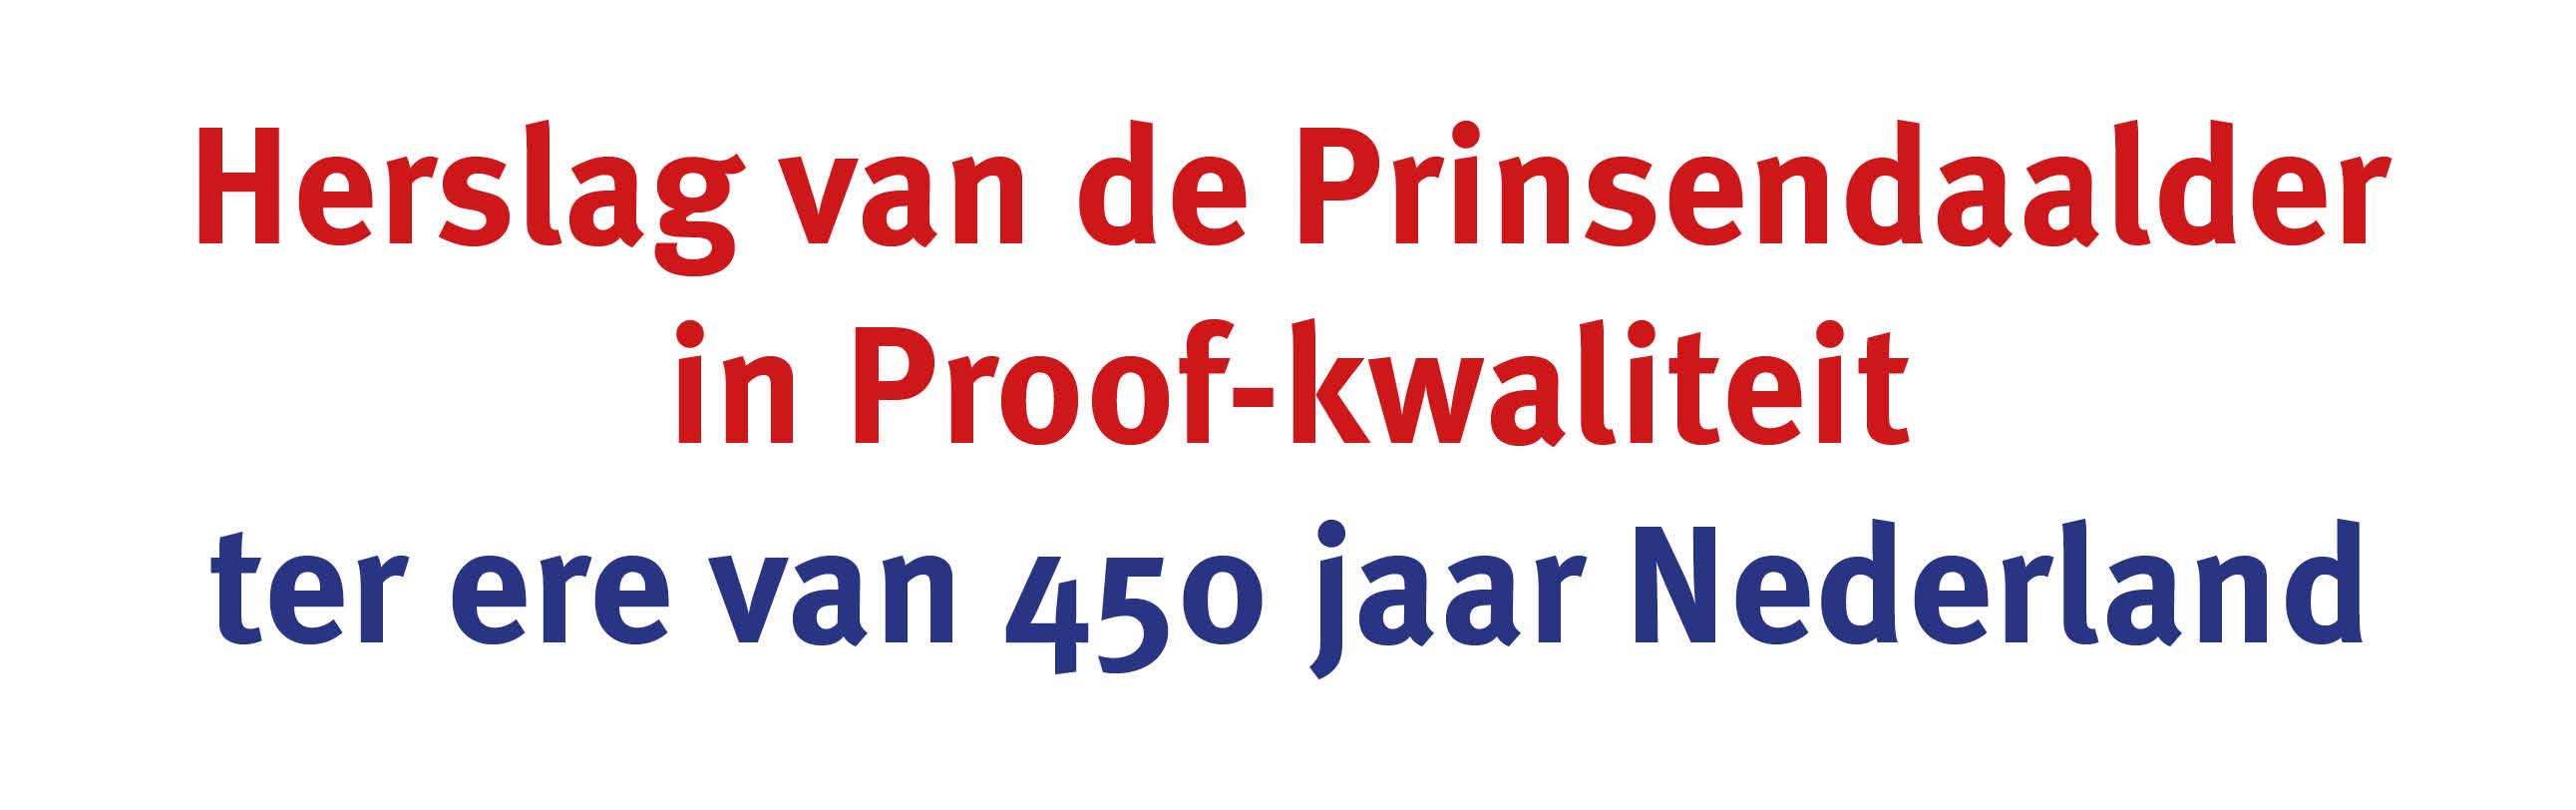 Bekijk en bestel: 450 jaar Nederland